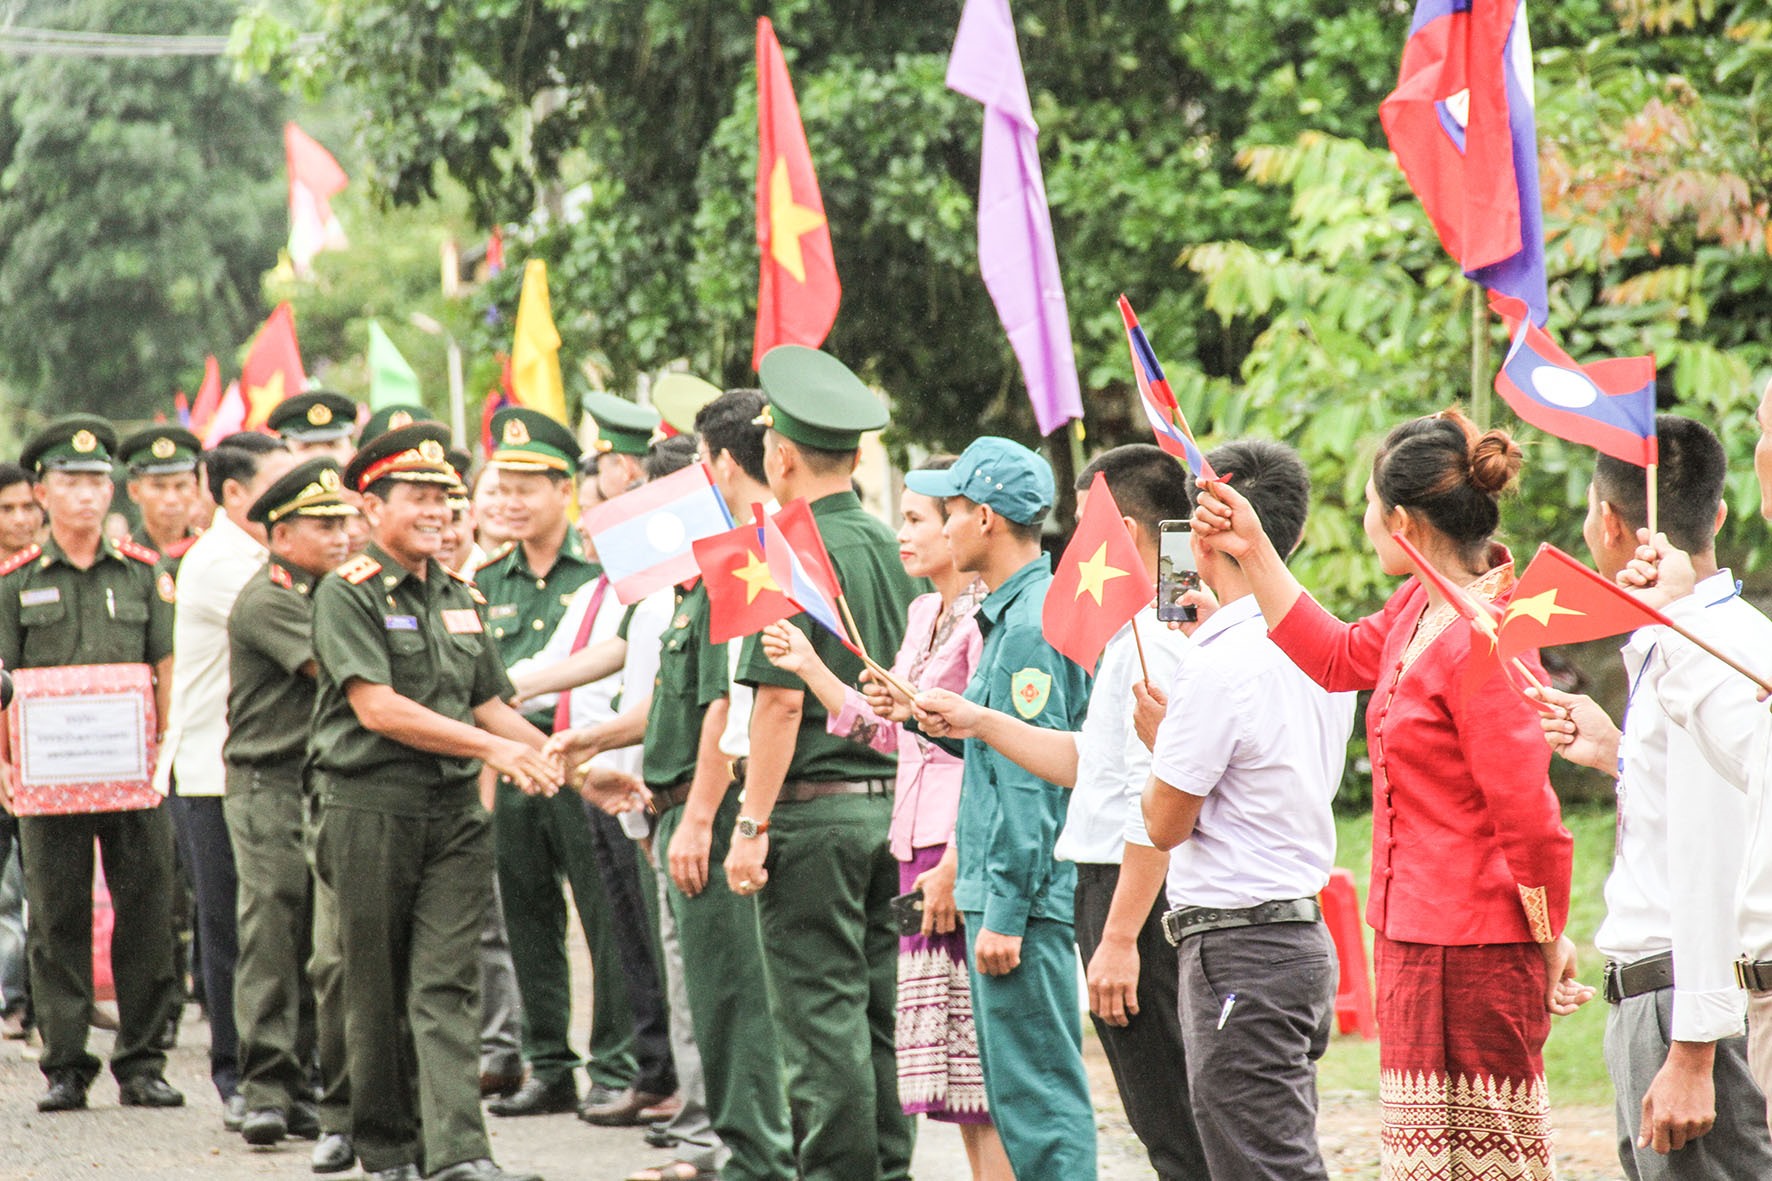 Những chuyến gặp gỡ, thăm hỏi lẫn nhau đã góp phần tô thắm thêm mối quan hệ hữu nghị đặc biệt Việt - Lào trên tuyến biên giới